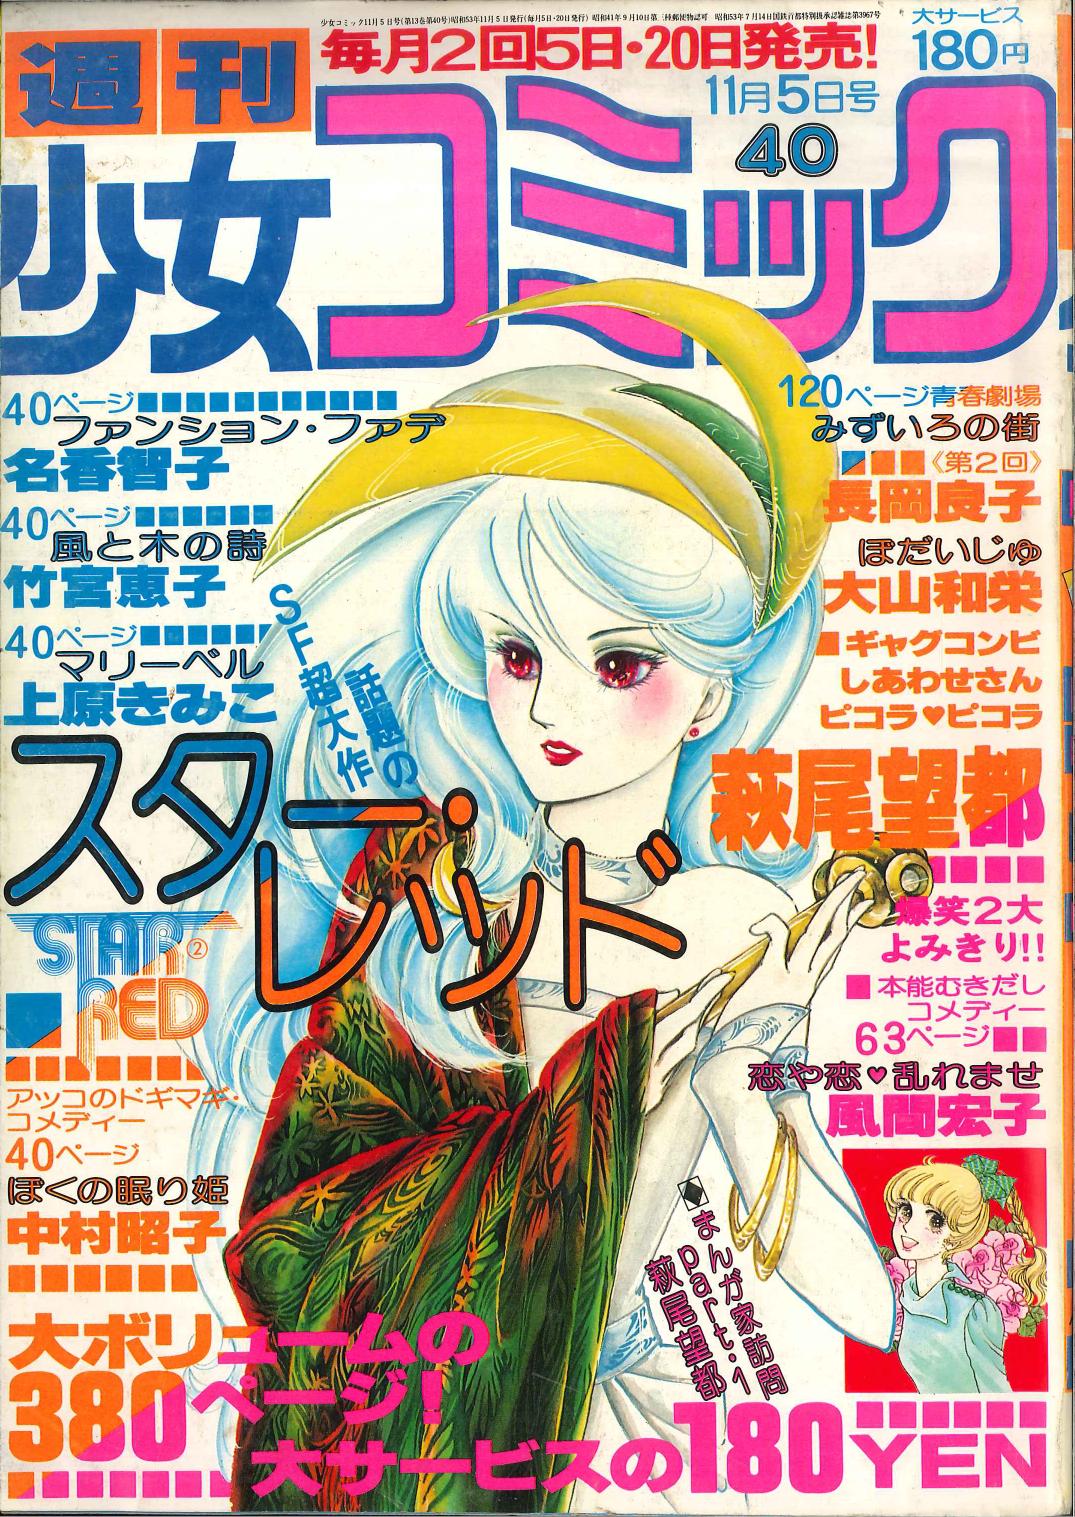 ちゃお 創刊号 1977年10月号 昭和53年 少女雑誌 漫画 月刊誌 資料価値-